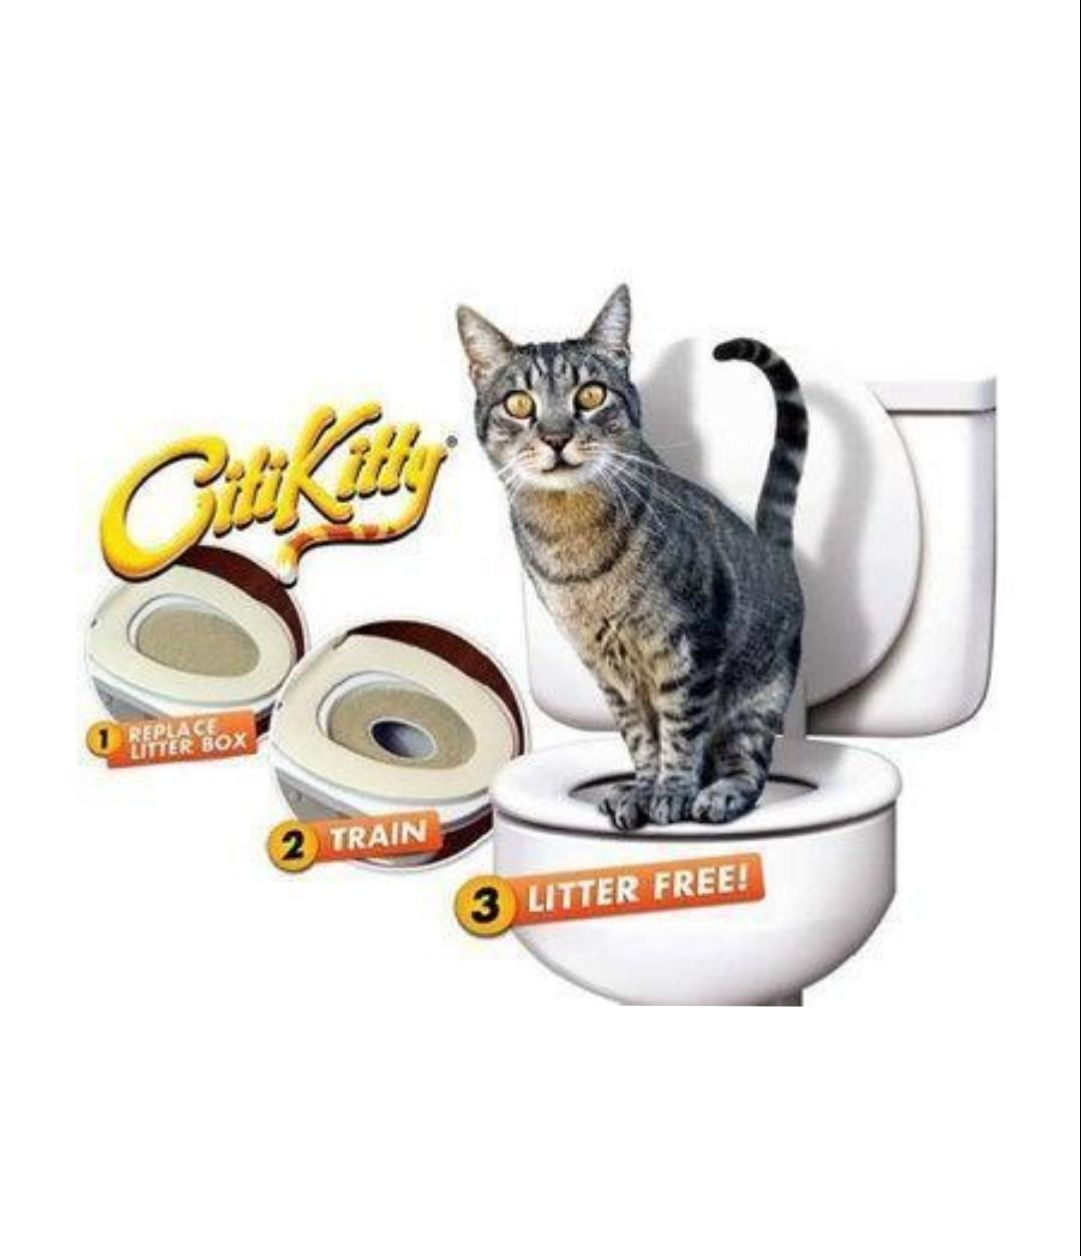 Туалет для котов Citi Kitty